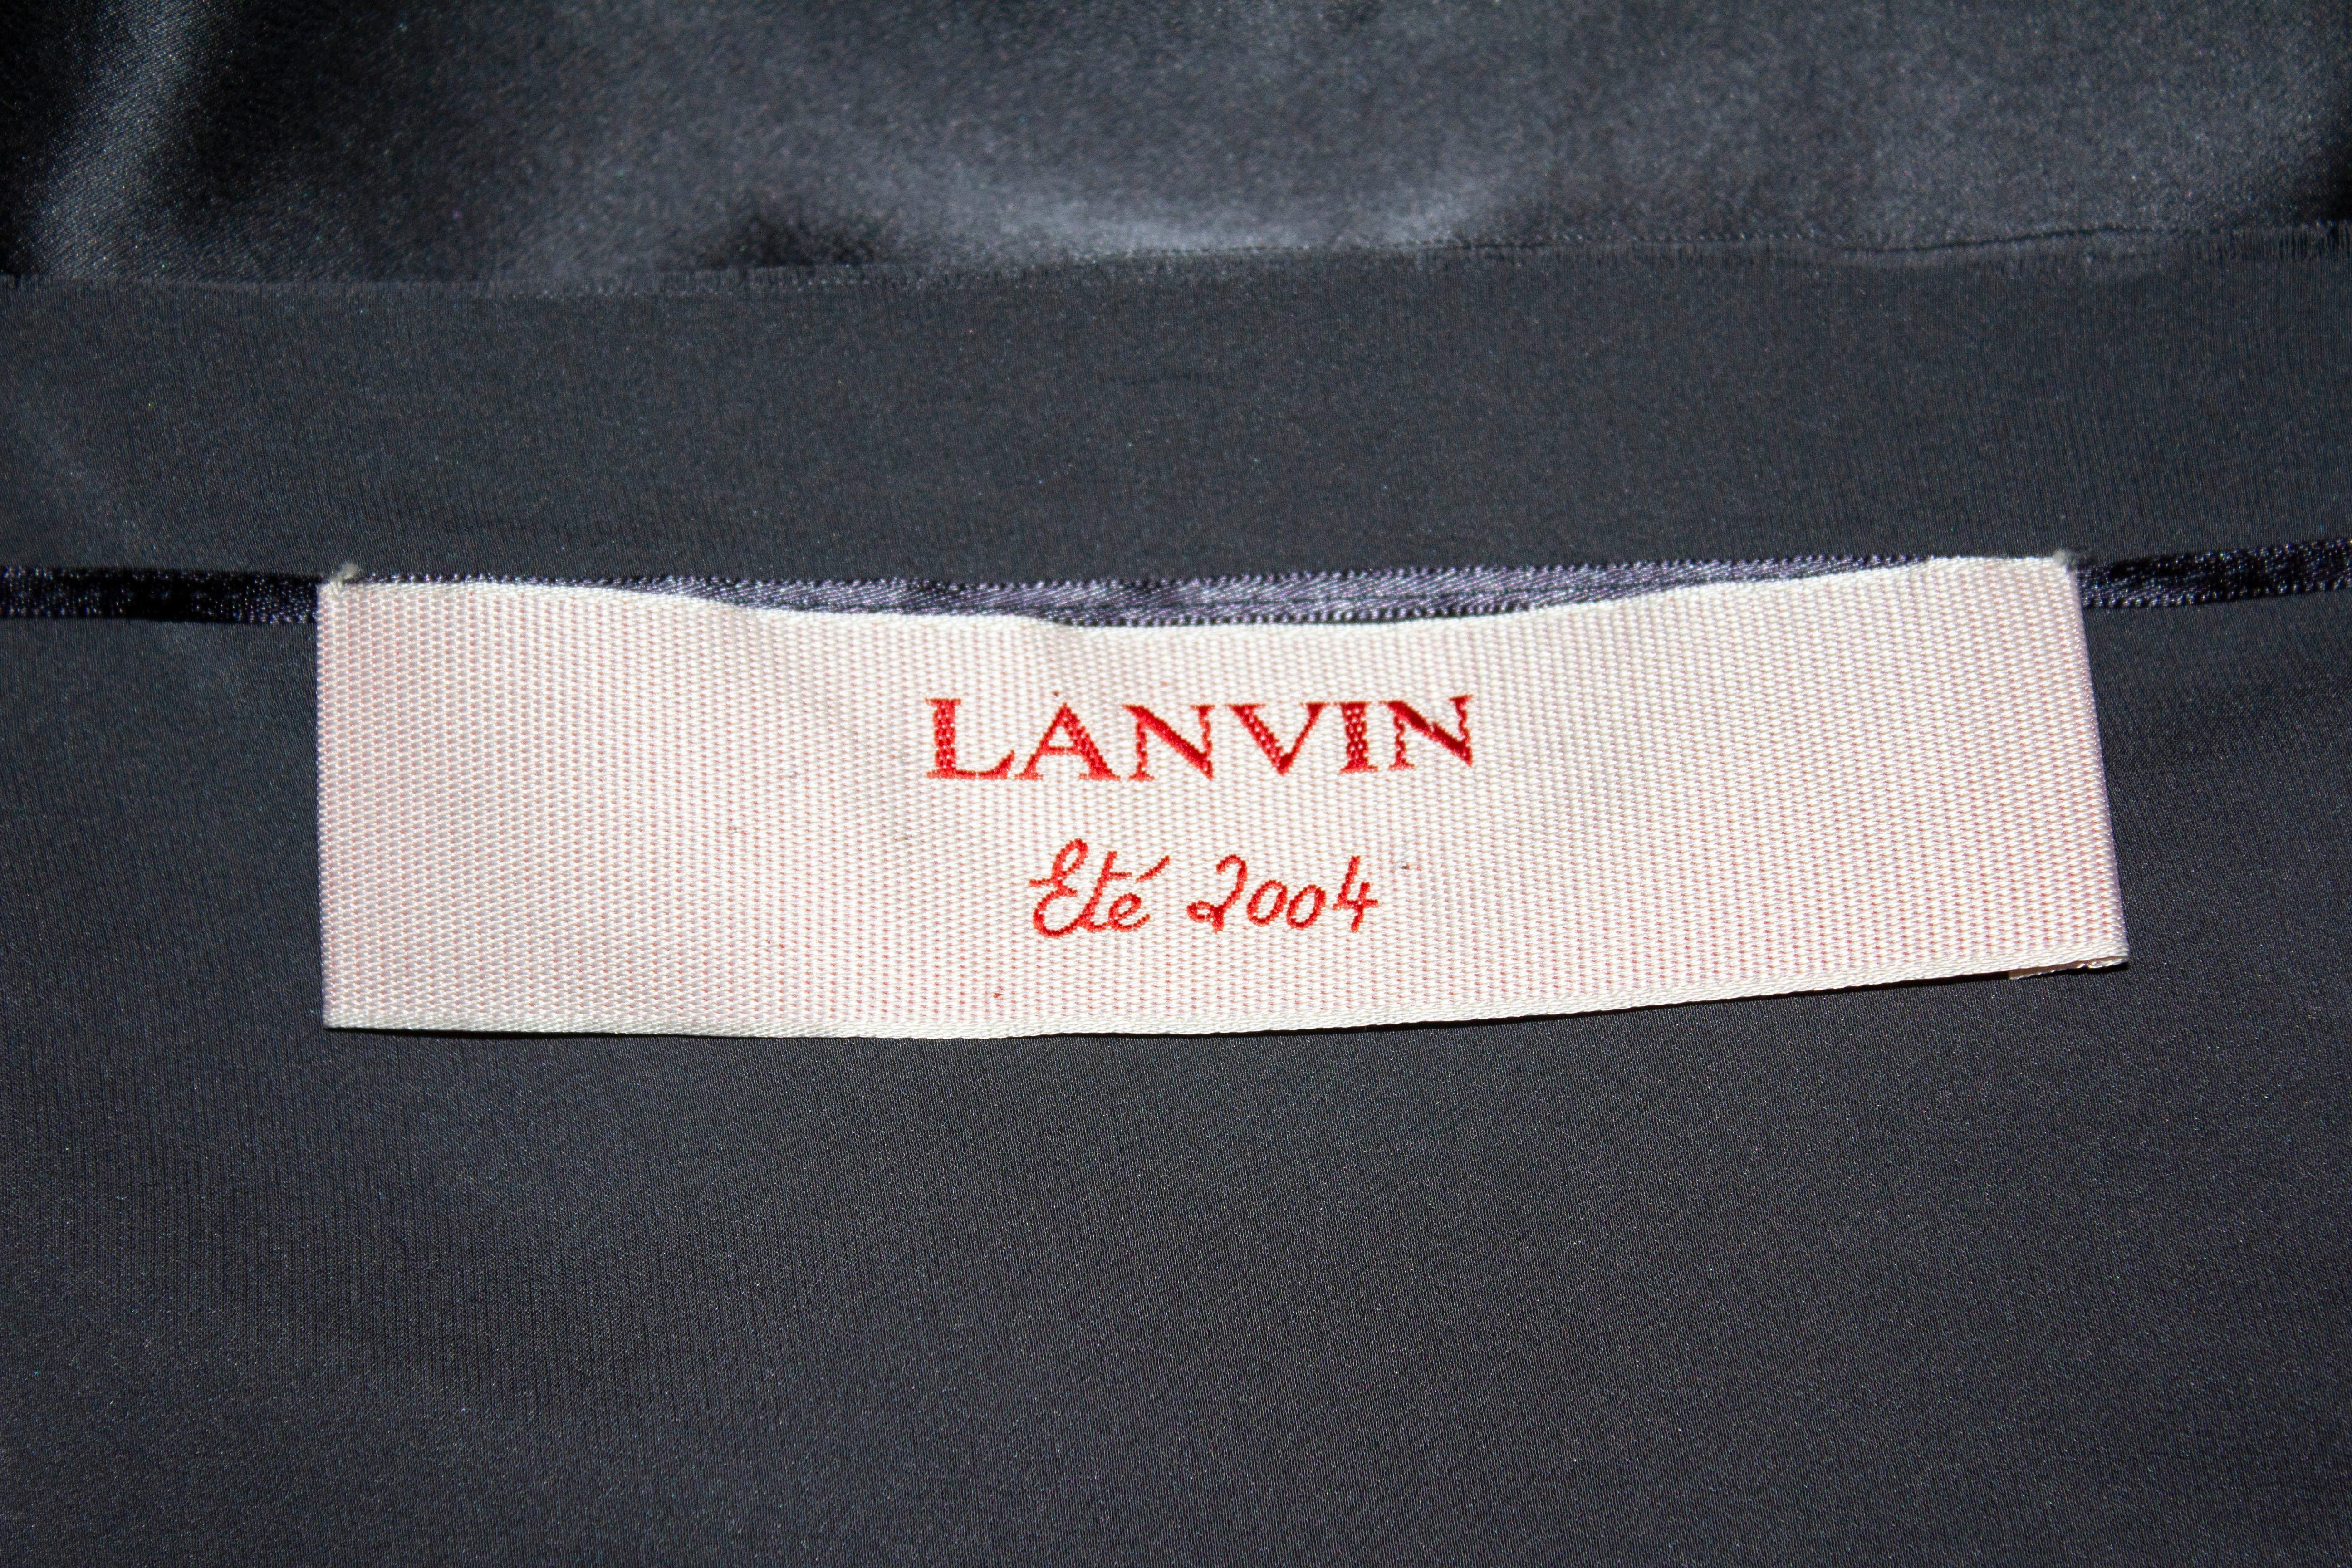 Une jupe en soie chic pour l'été par Lanvin, été 2004. La jupe n'est pas doublée et présente des plis à l'ouverture. Elle se ferme à l'aide d'un gros crochet et de fermetures éclair. Les bords bruts sont intentionnels mais pourraient bien sûr être